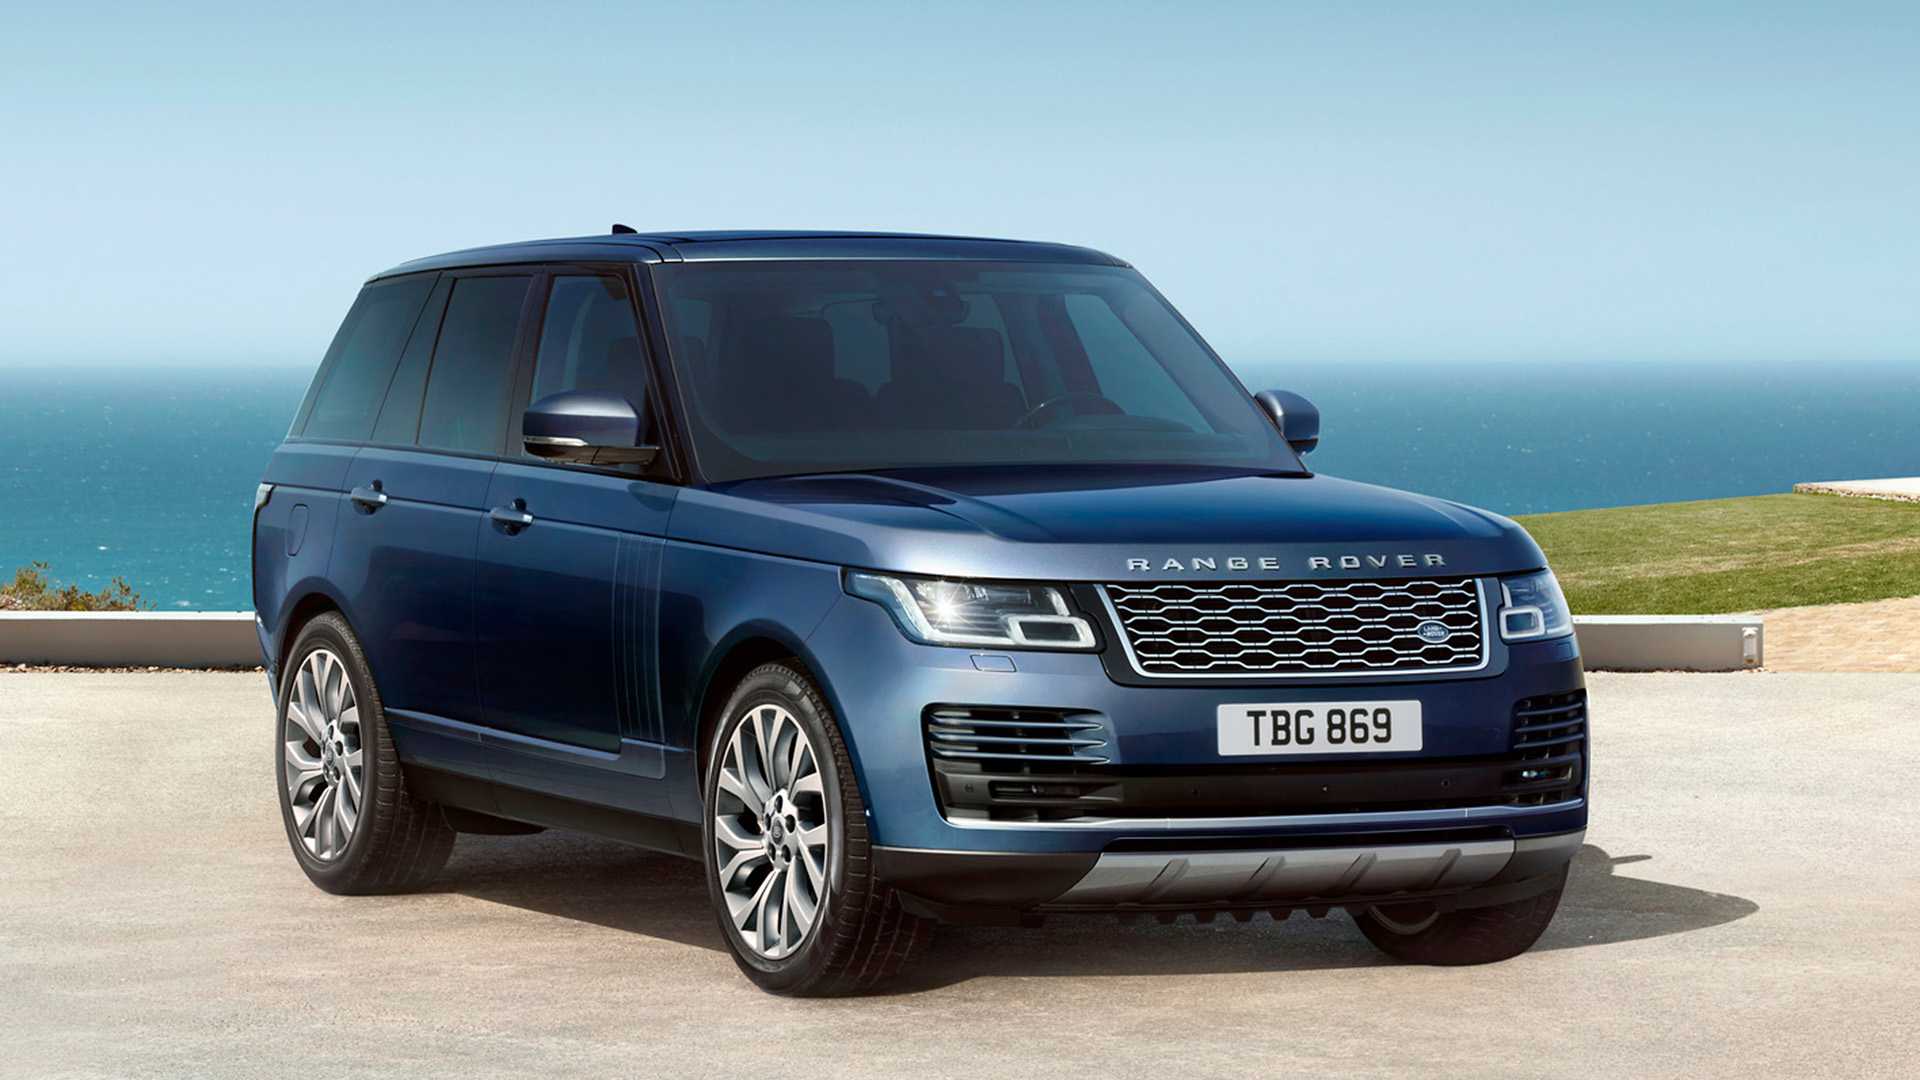 Khám phá Range Rover – mẫu SUV chiến lược của hãng xe Anh Quốc Land Over